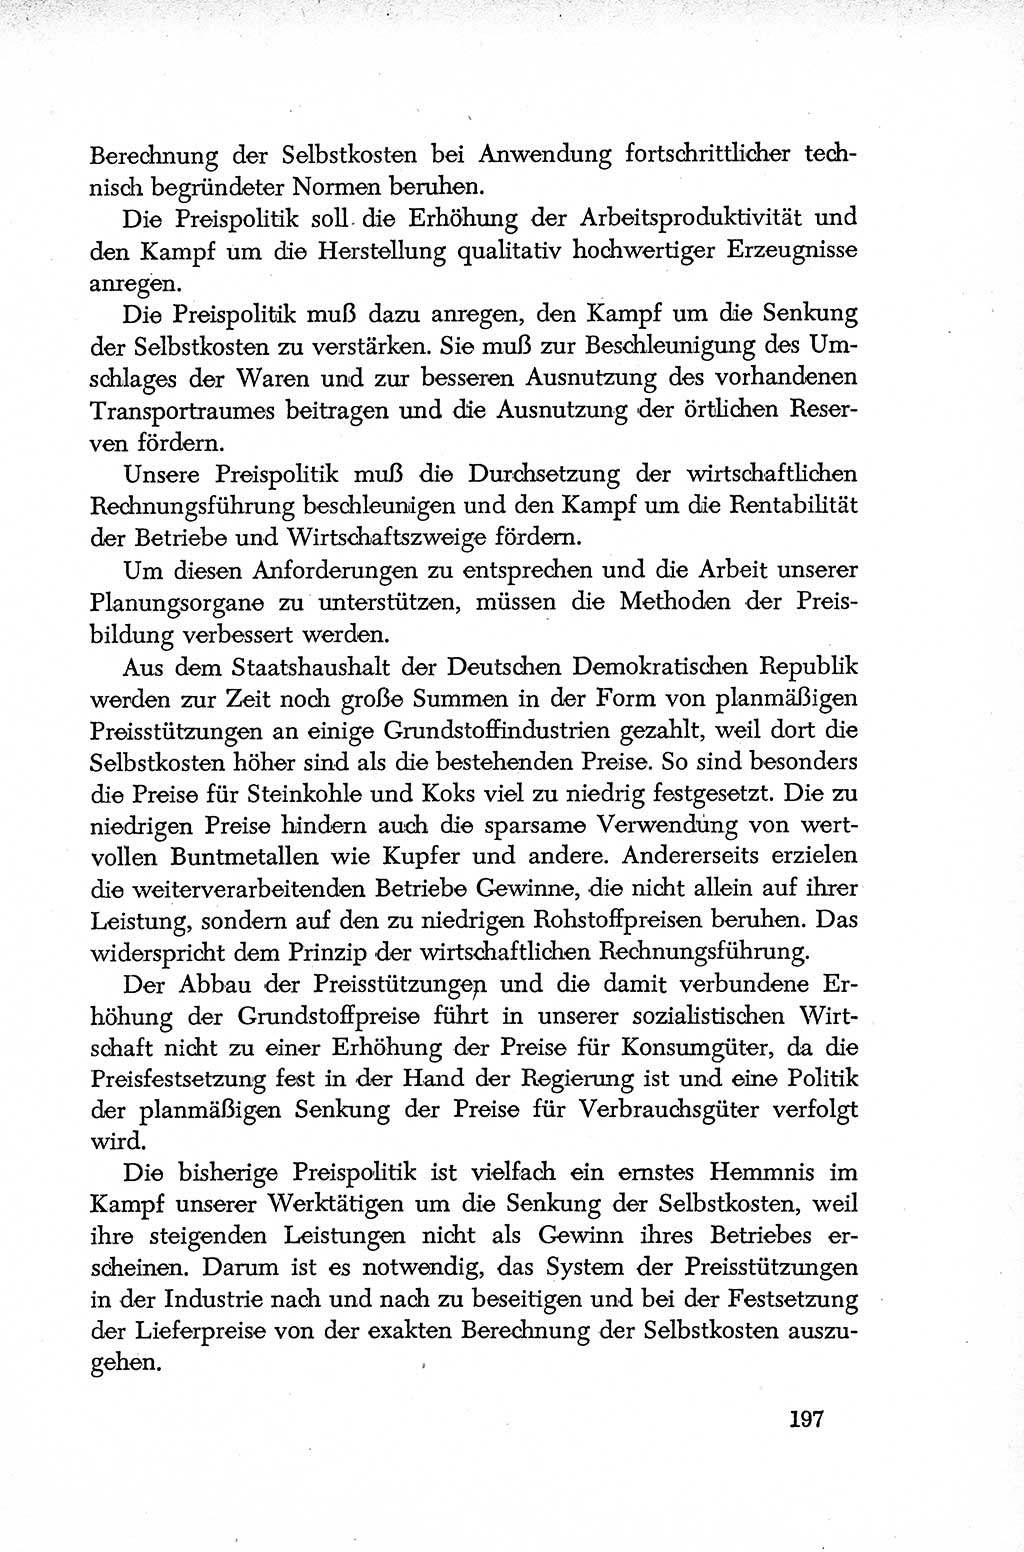 Dokumente der Sozialistischen Einheitspartei Deutschlands (SED) [Deutsche Demokratische Republik (DDR)] 1952-1953, Seite 197 (Dok. SED DDR 1952-1953, S. 197)